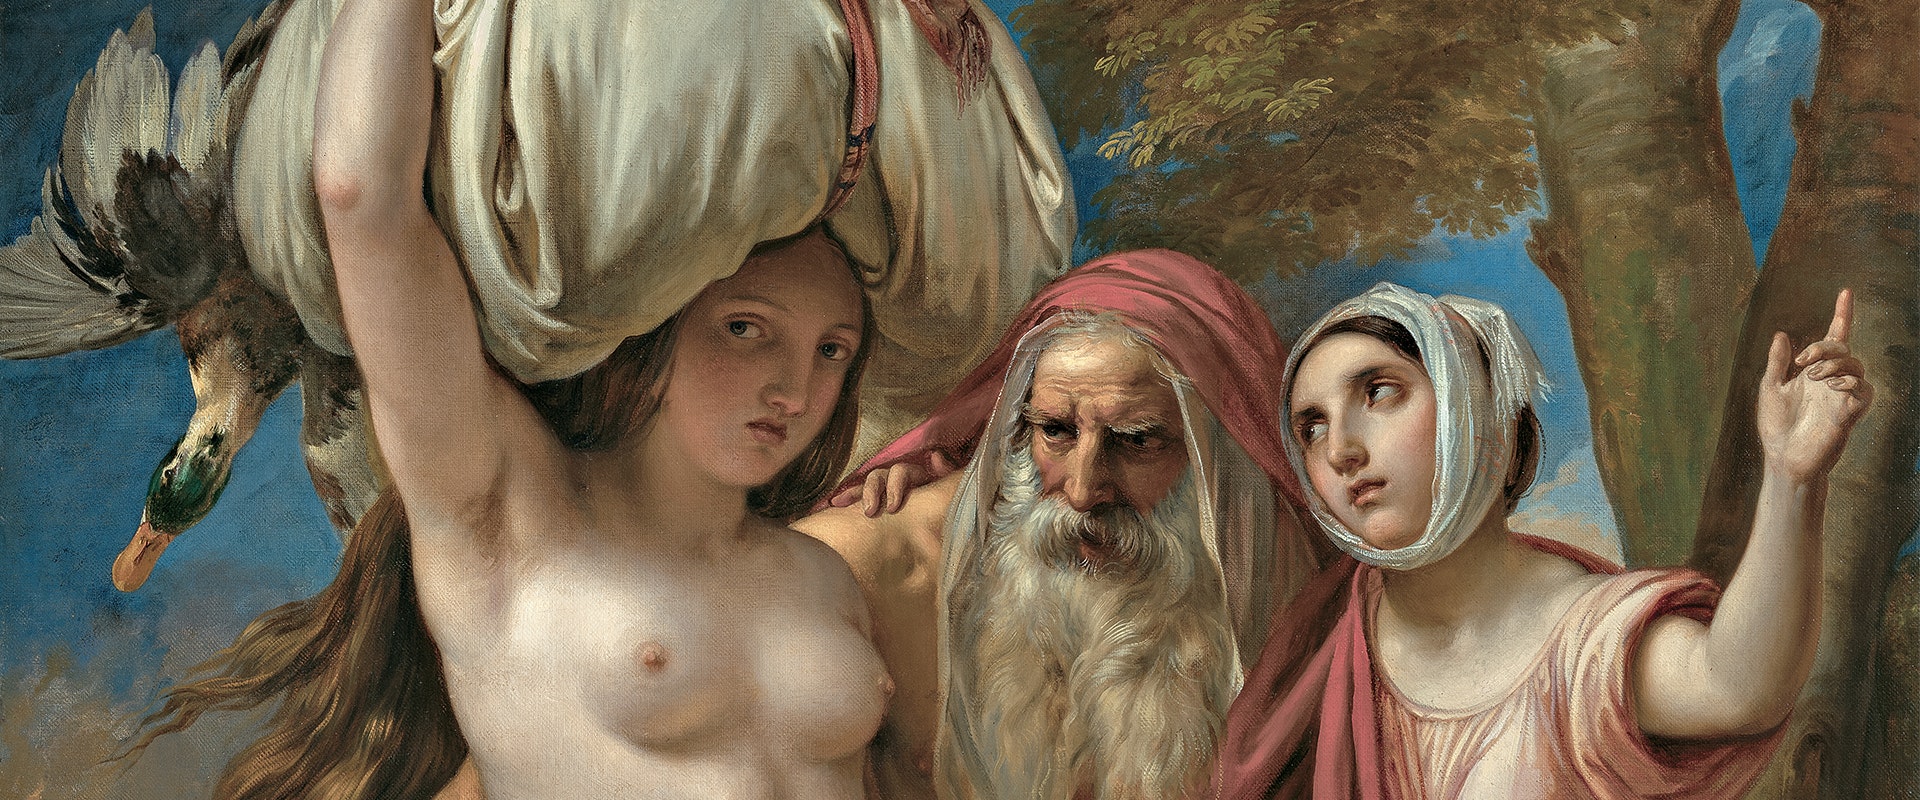 Giuseppe Bezzuoli (1784 - 1855). Un grande protagonista della pittura romantica